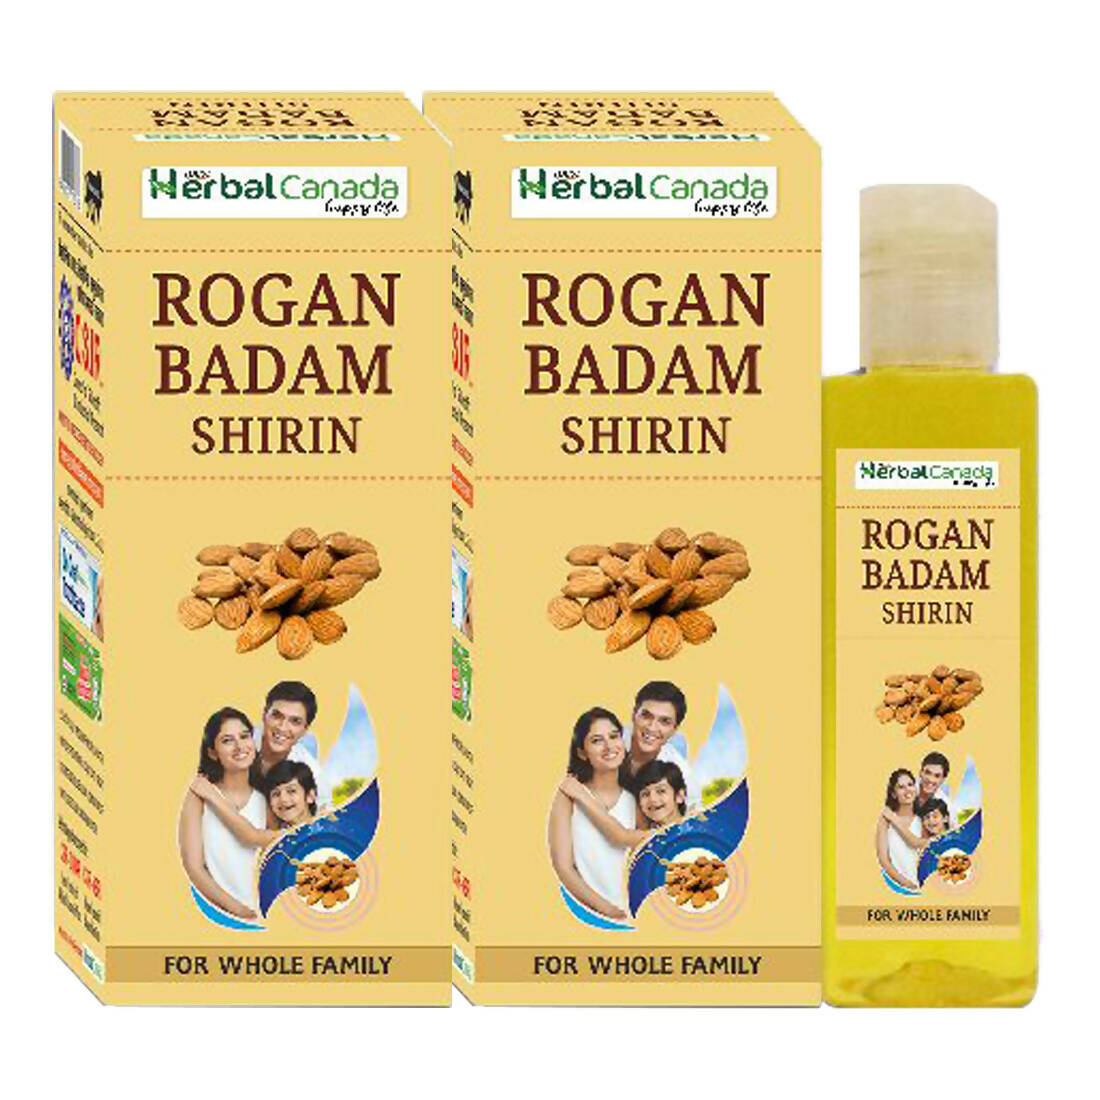 Herbal Canada Rogan Badam Shirin -  buy in usa 